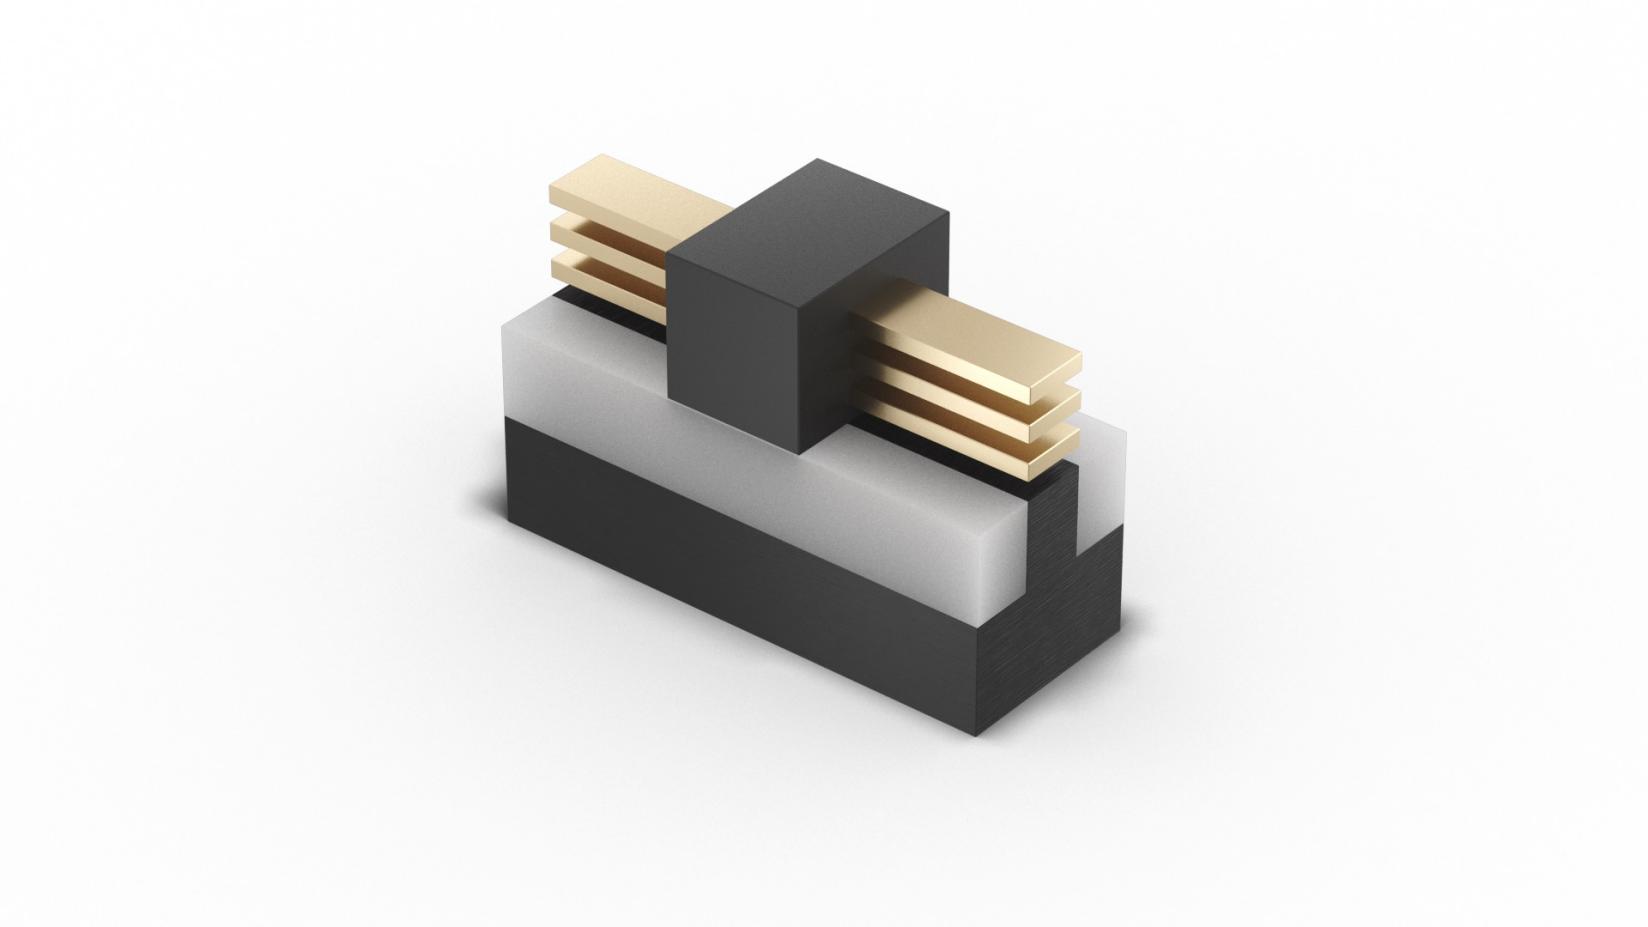 smallest transistor intel